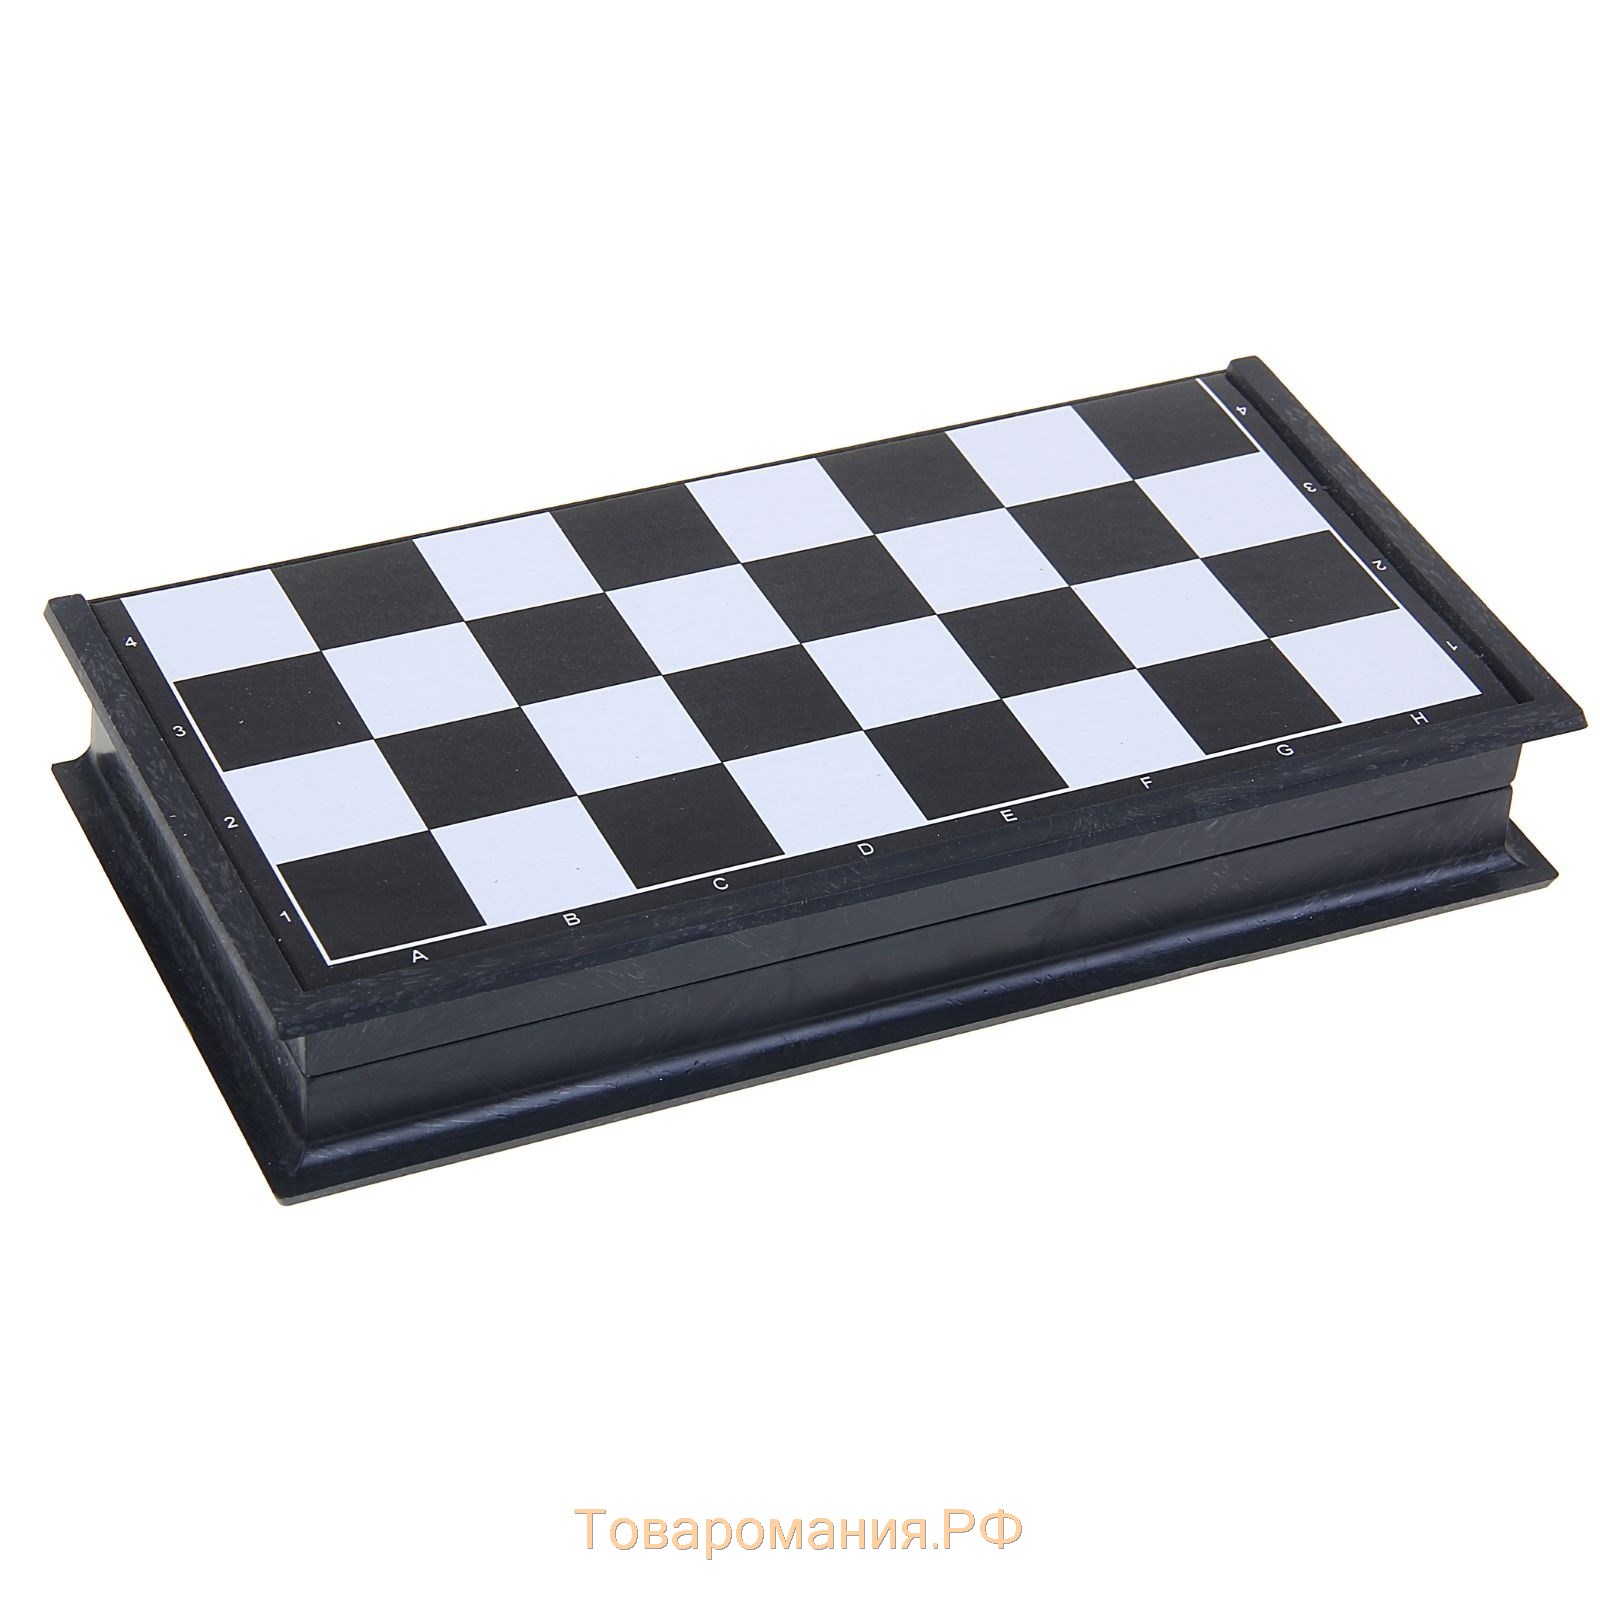 Шахматы настольные пластиковые, 31 х 31 см, король h-6.5 см, пешка h-3 см